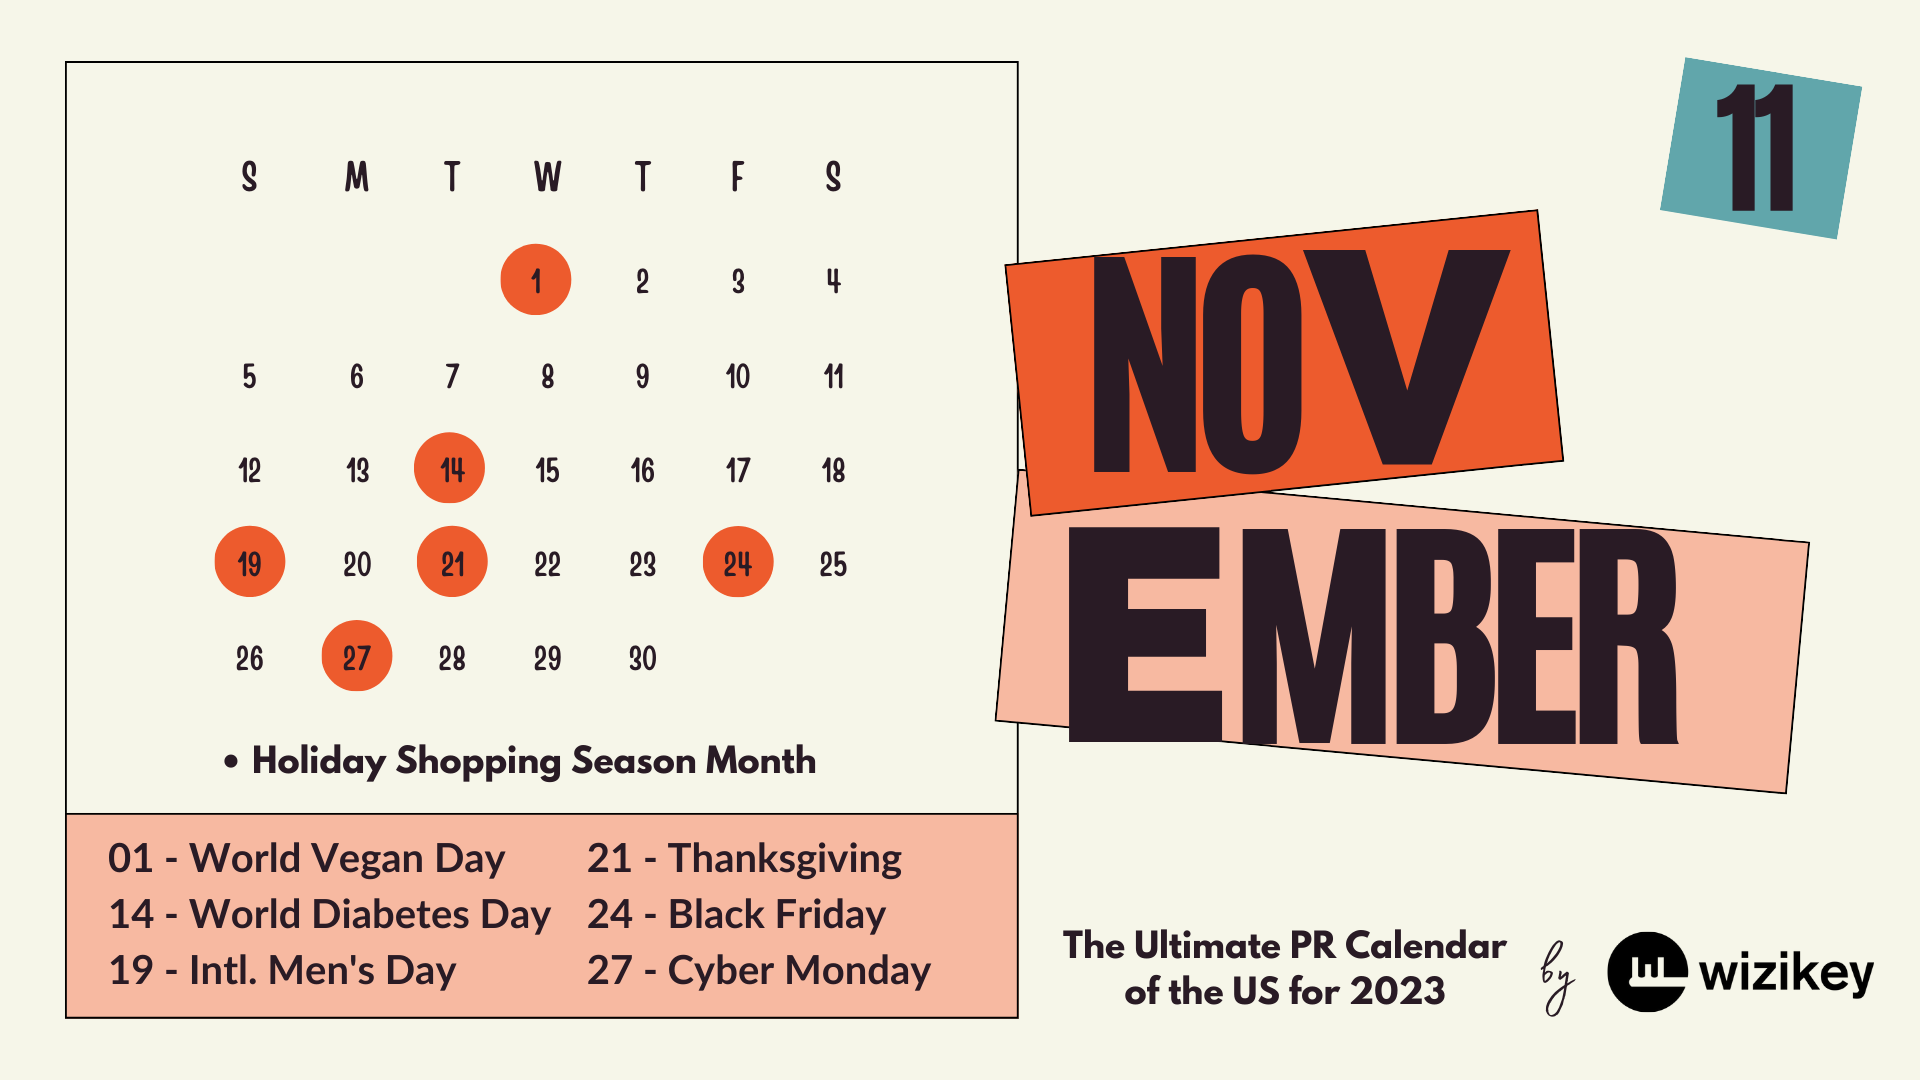 Key PR events for Nov 2023